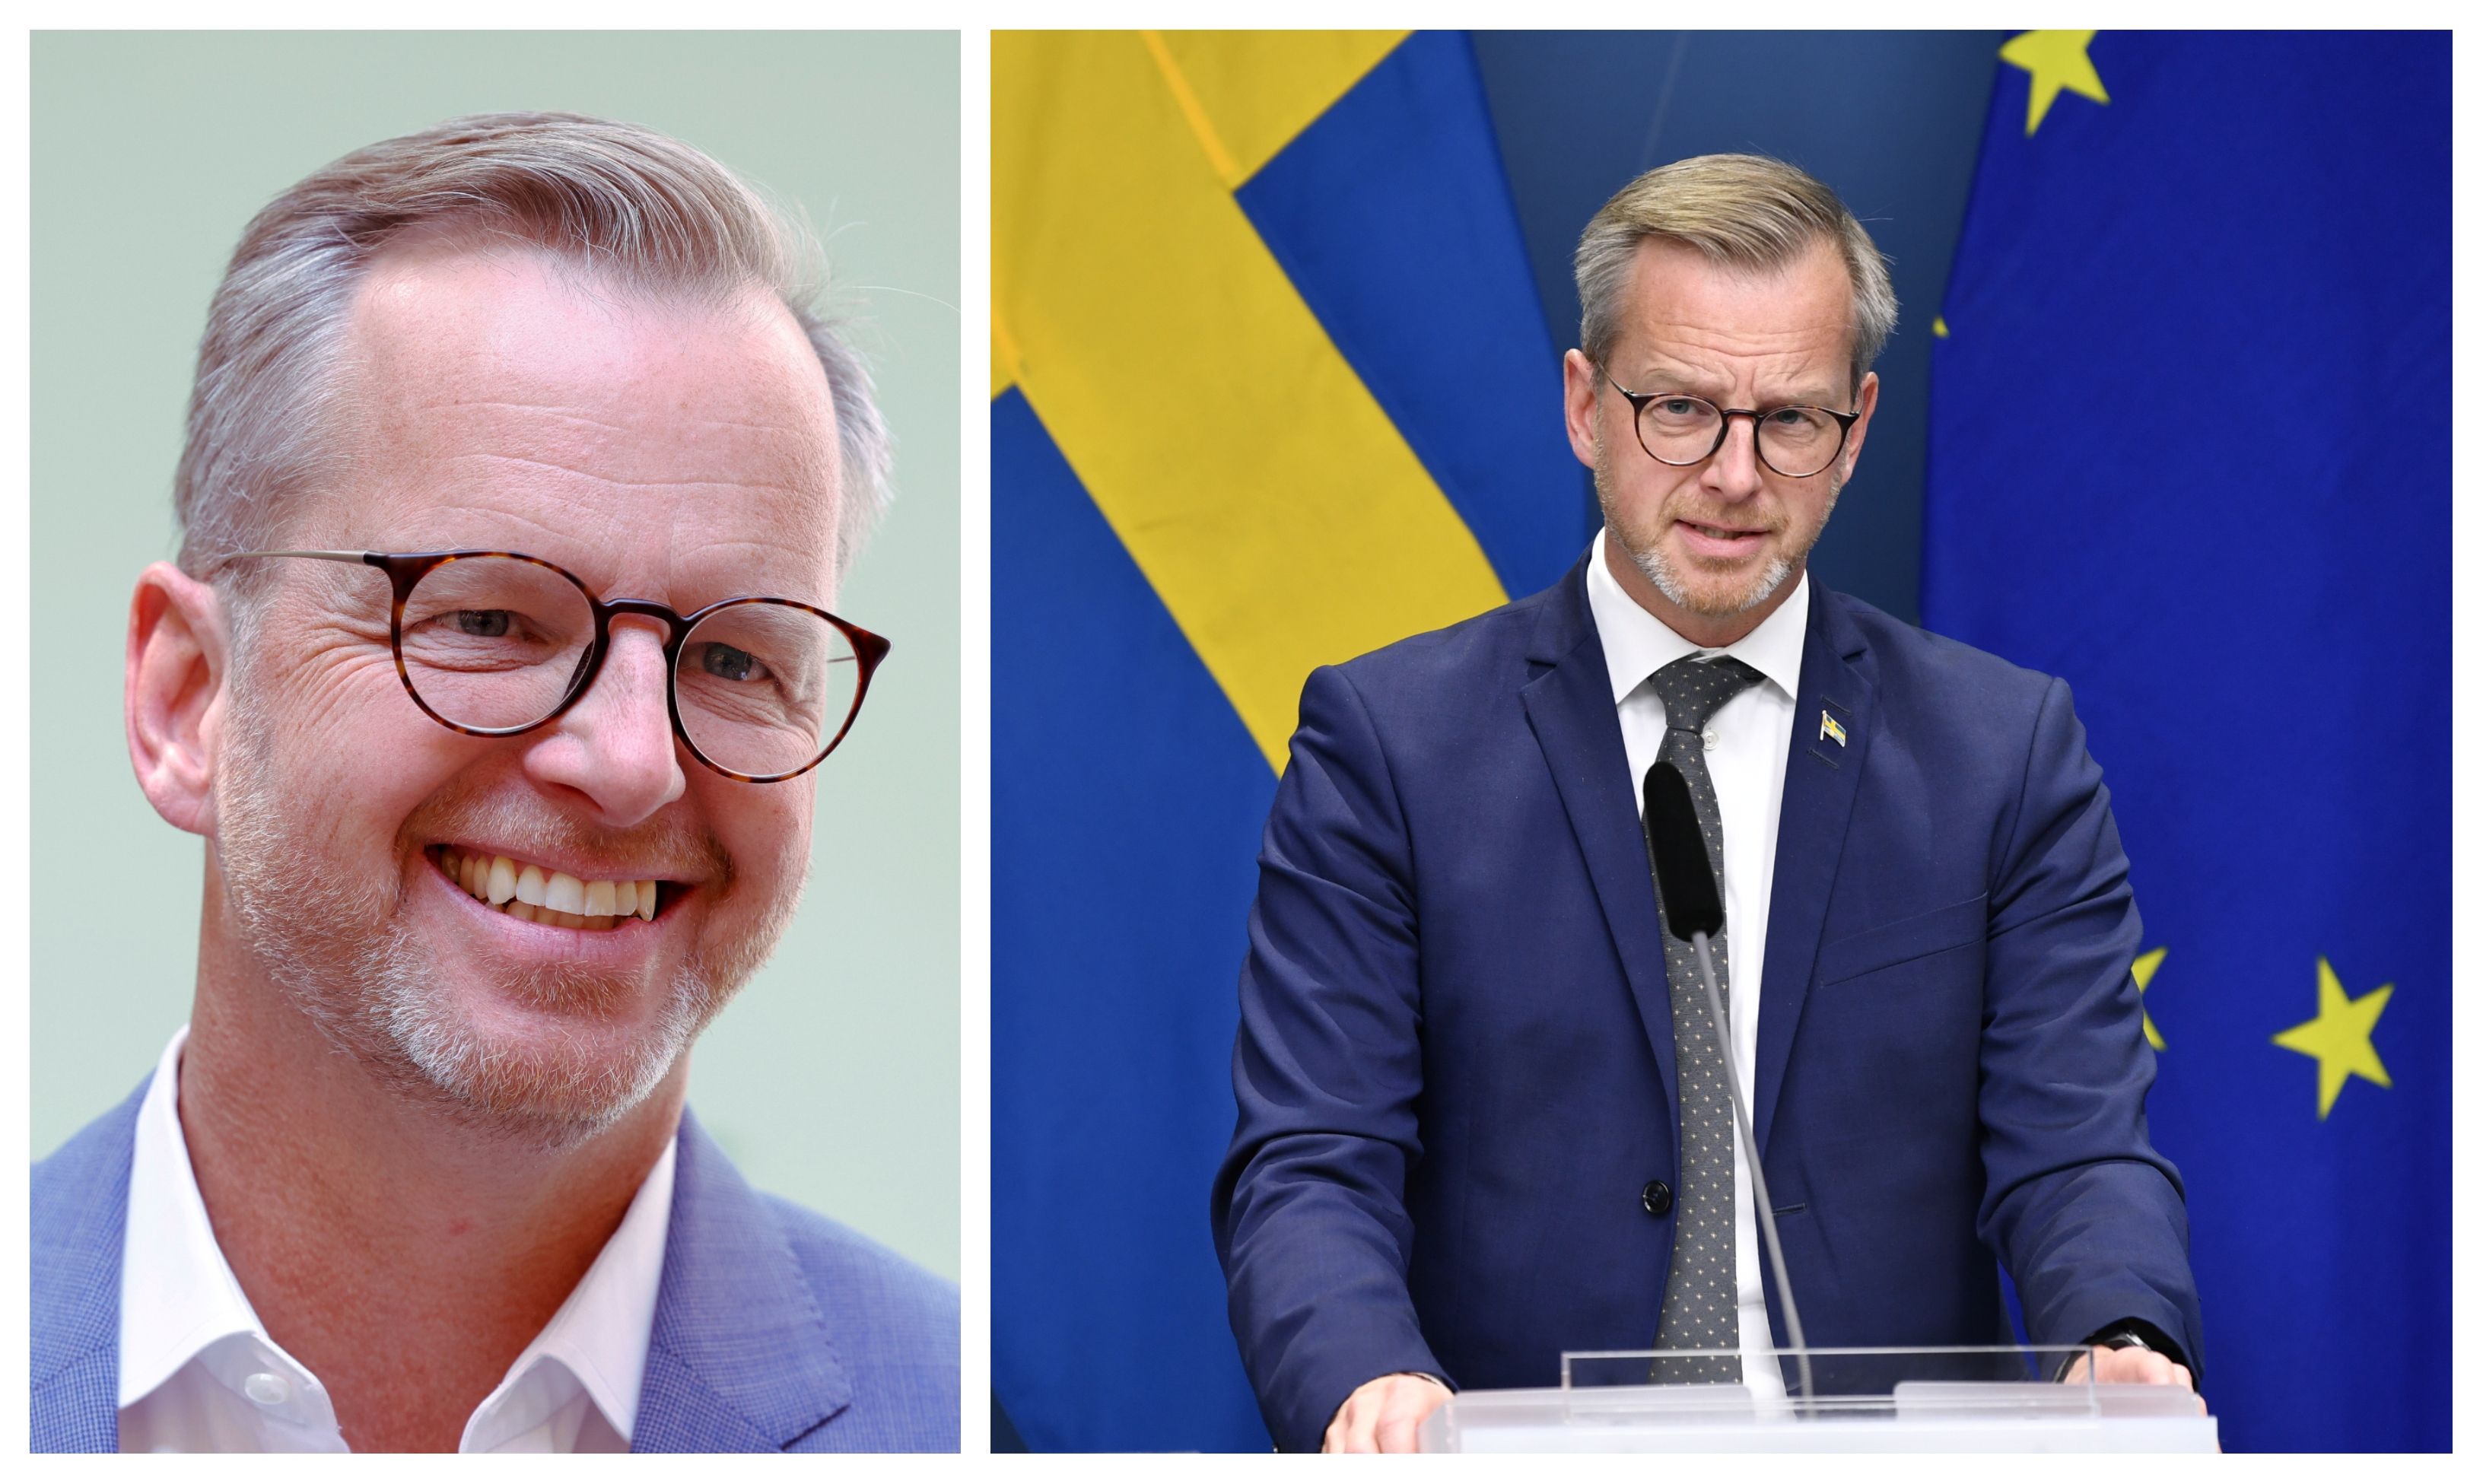 Nyheter24 listar sex fakta om inrikesminister Mikael Damberg.